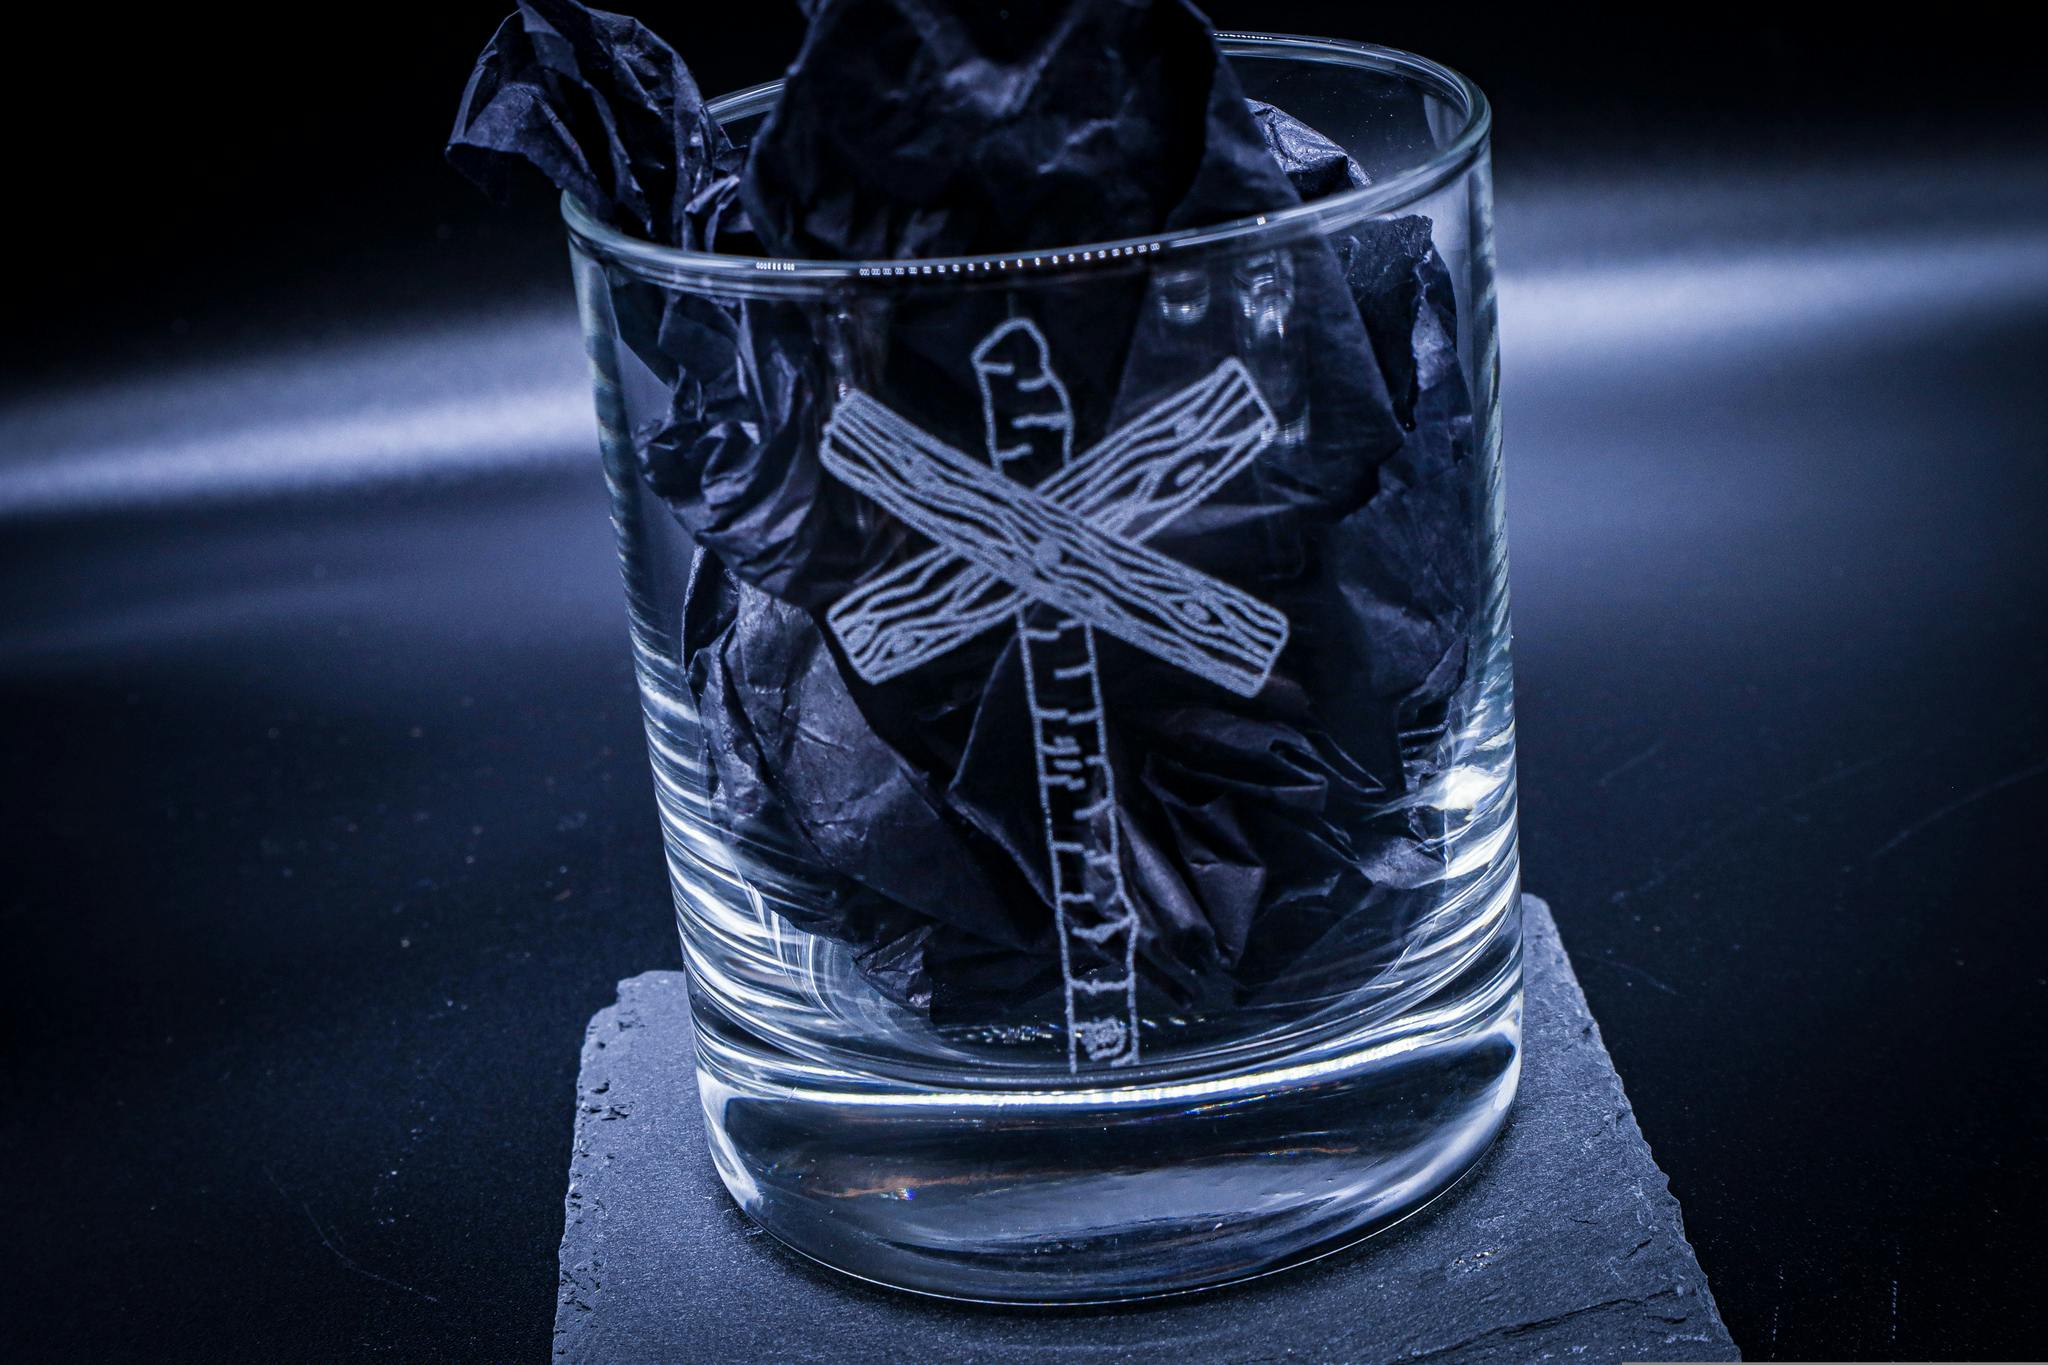 Graverat Whiskeyglas Ledkrysset